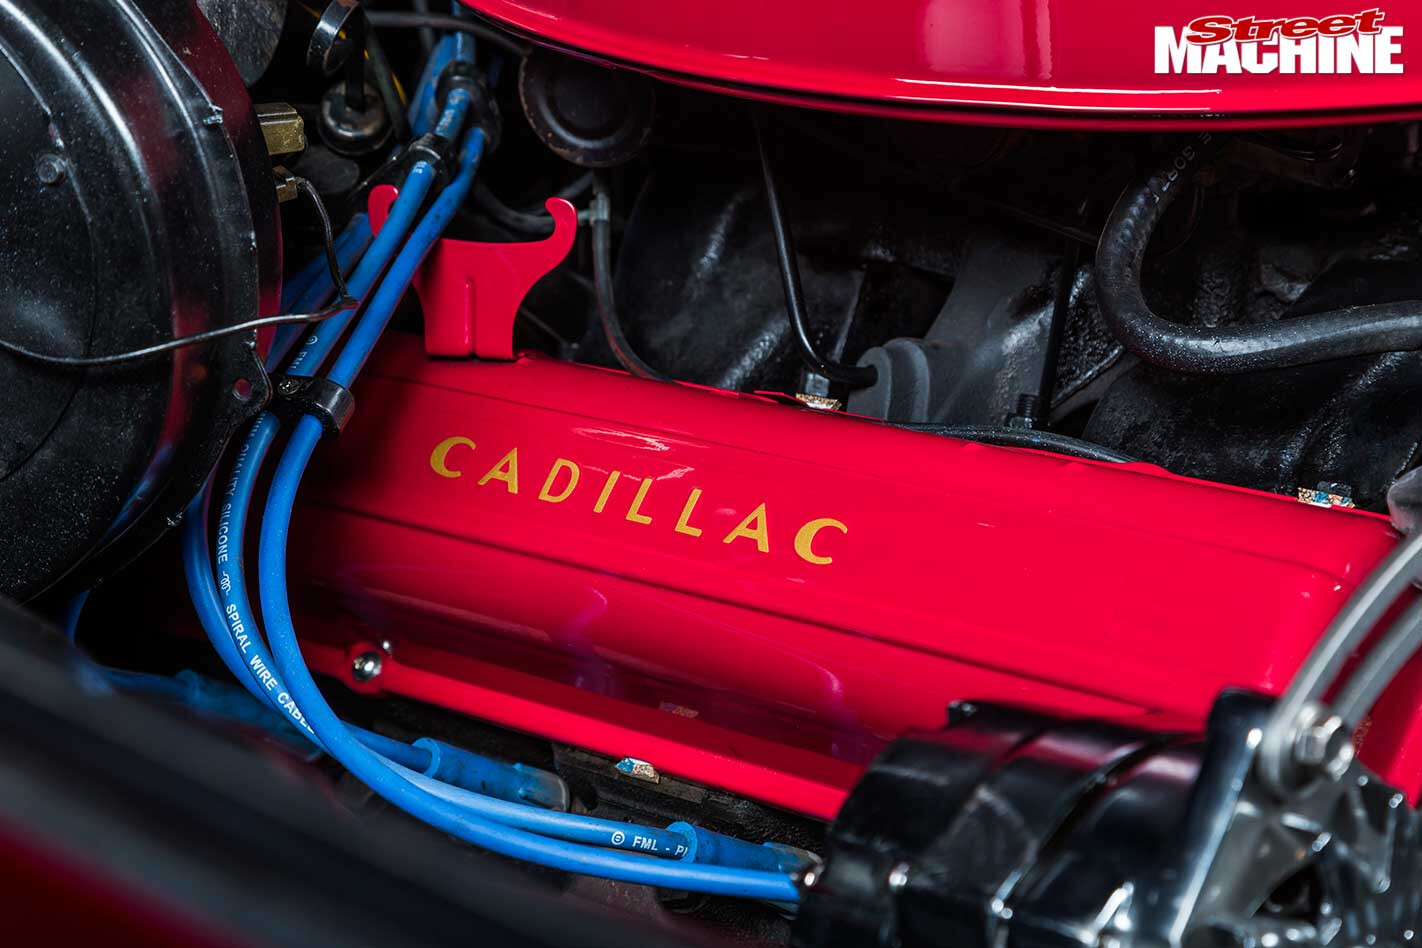 Cadillac Coupe De Ville engine